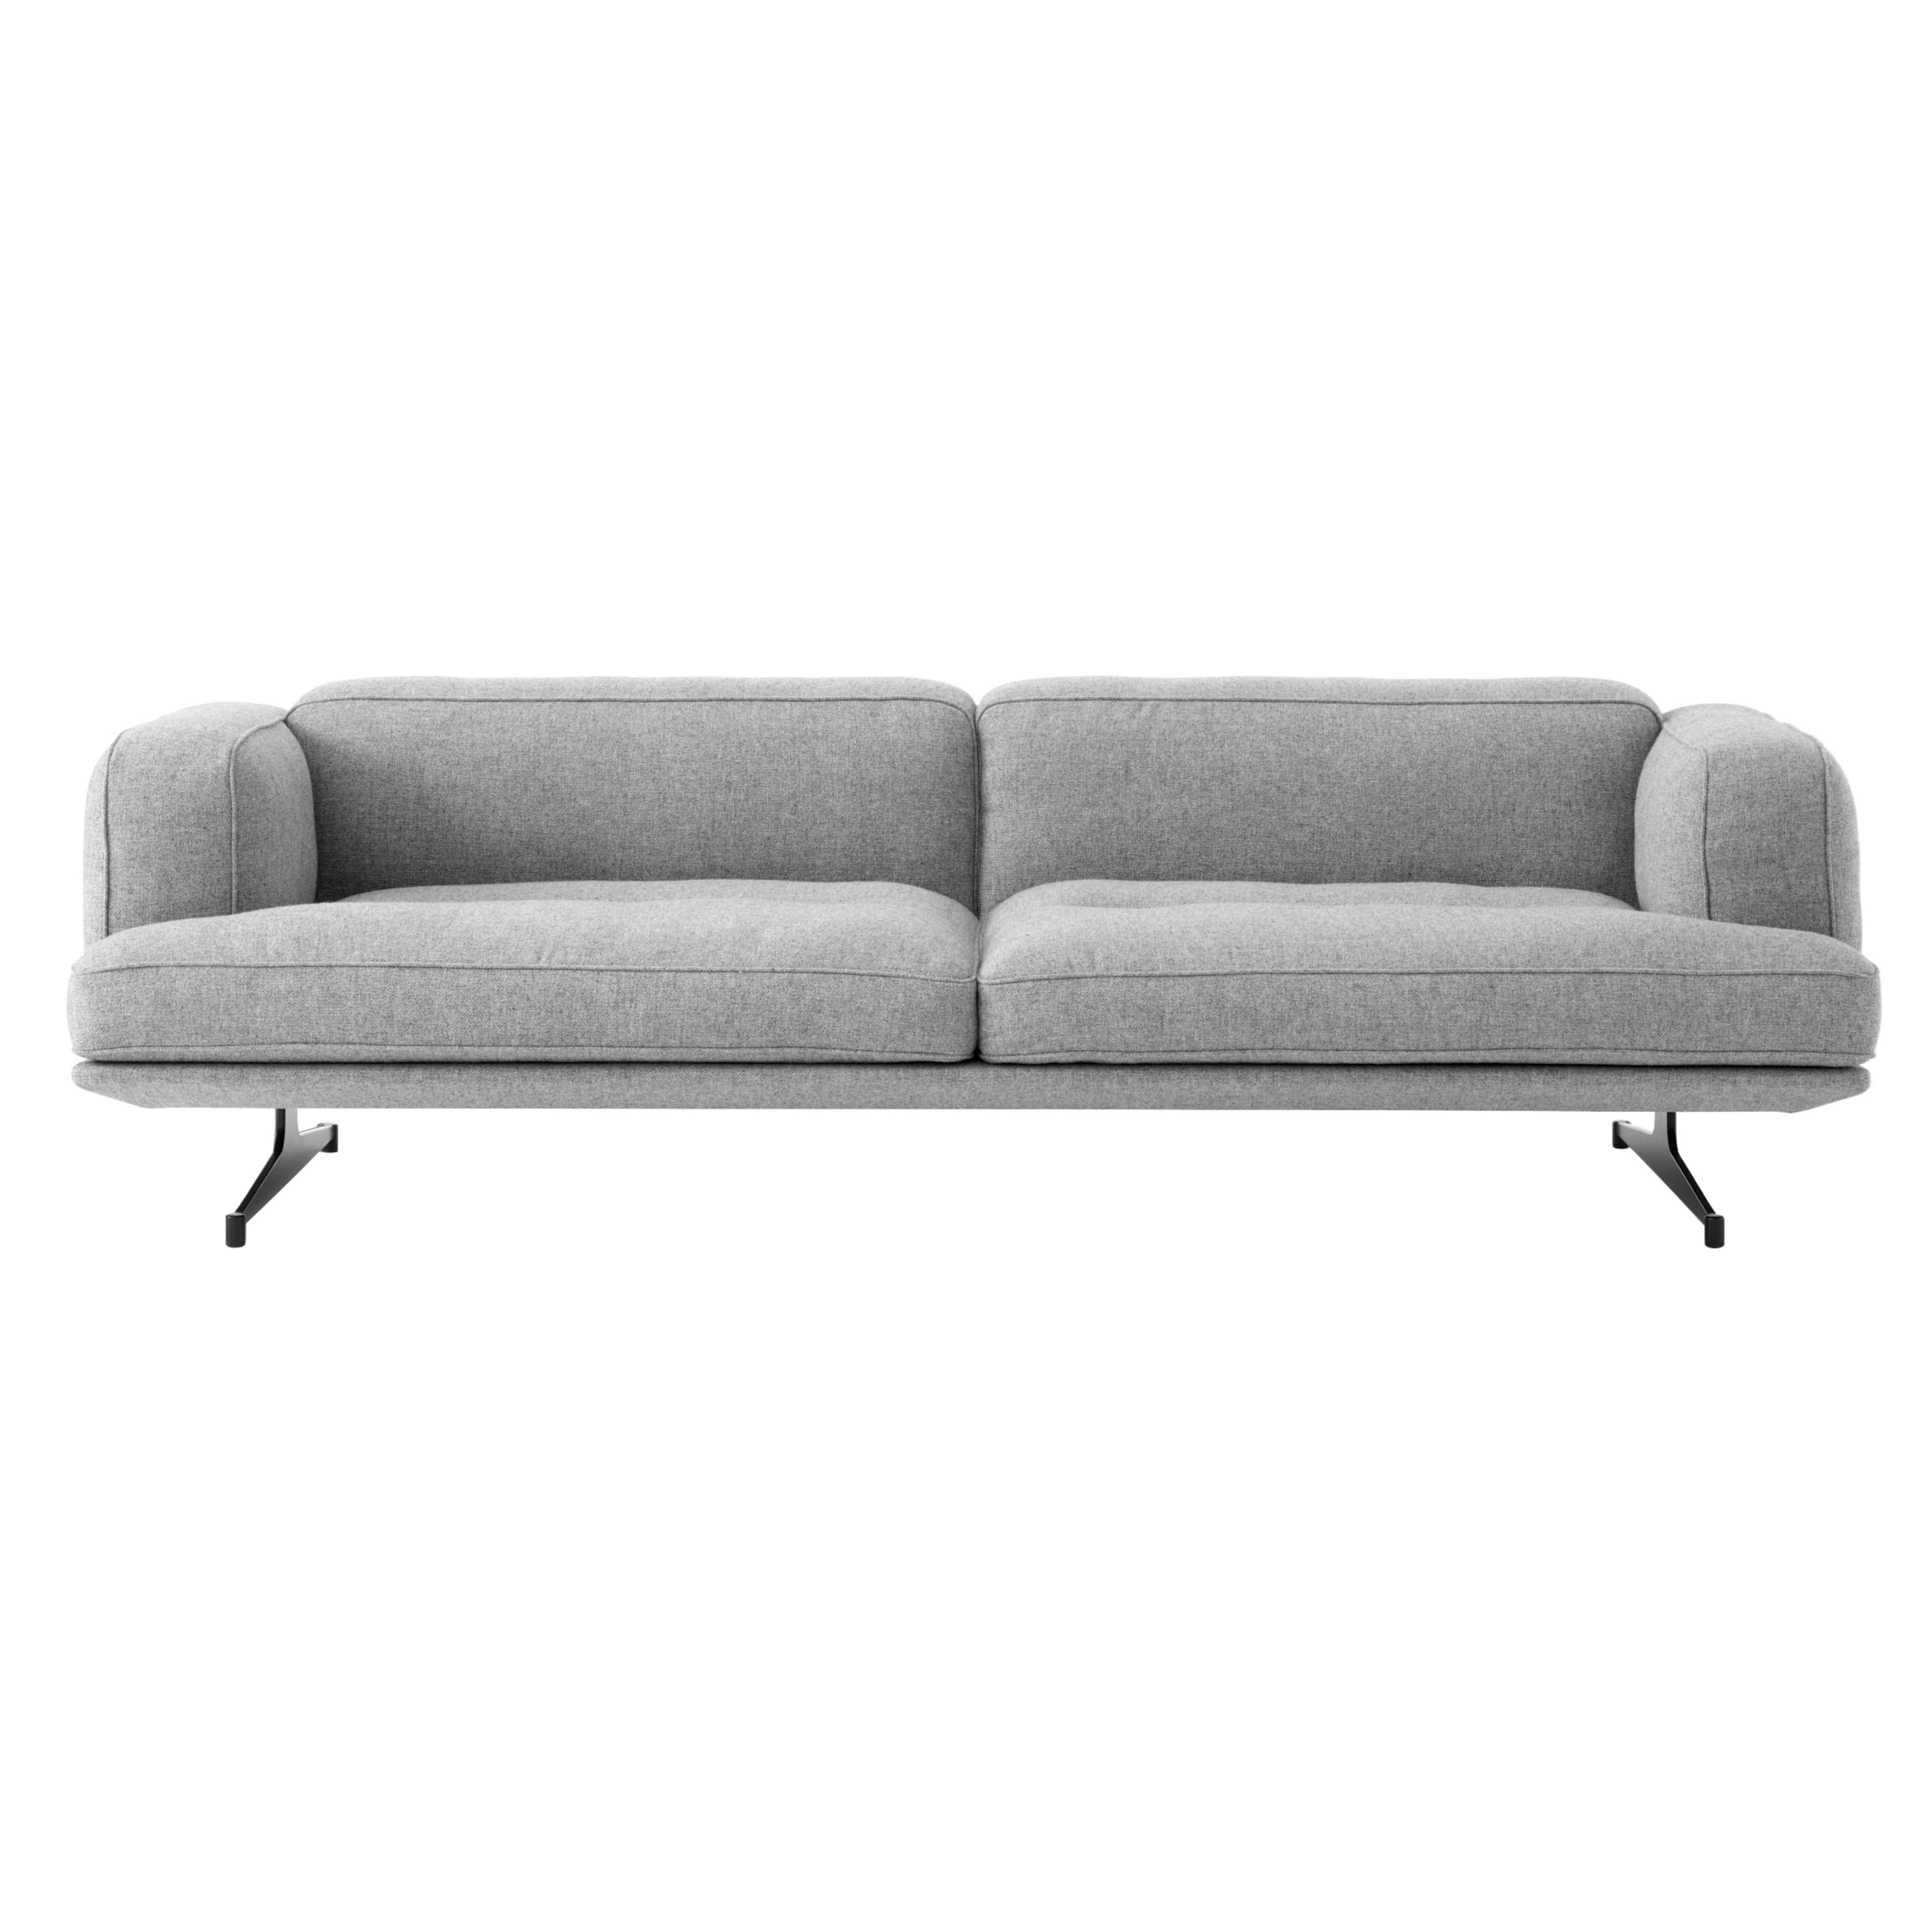 Inland Sofa: AV22 + AV23 + 3 (AV23) + Warm Black